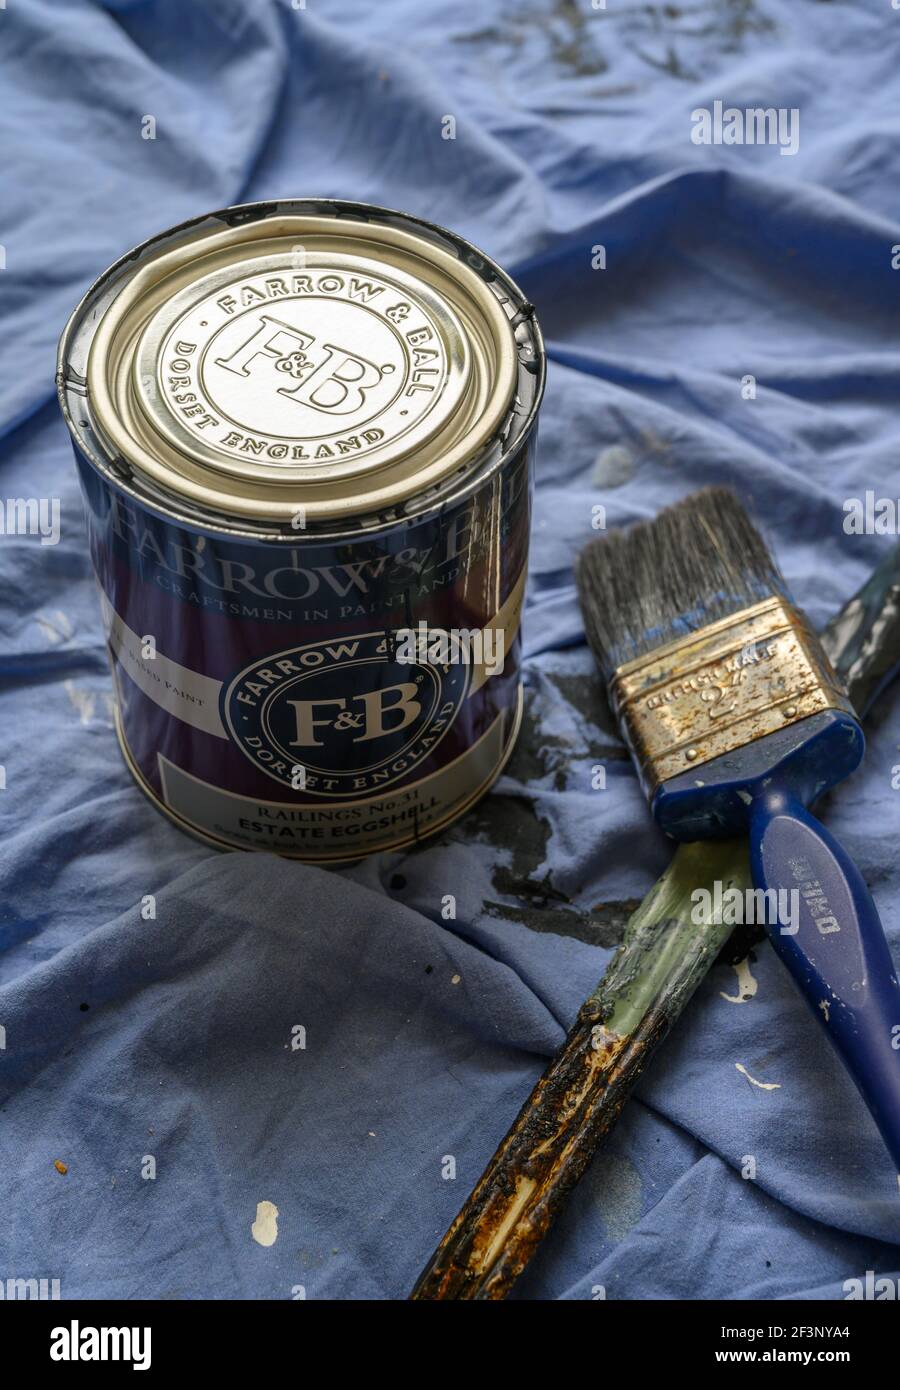 Une boîte de peinture Farrow & ball, n° de rambardes 31, fini coquille d'œuf Estate pour bois et métal d'intérieur avec brosse et bâton d'agitation sur la feuille de poussière bleue. Banque D'Images